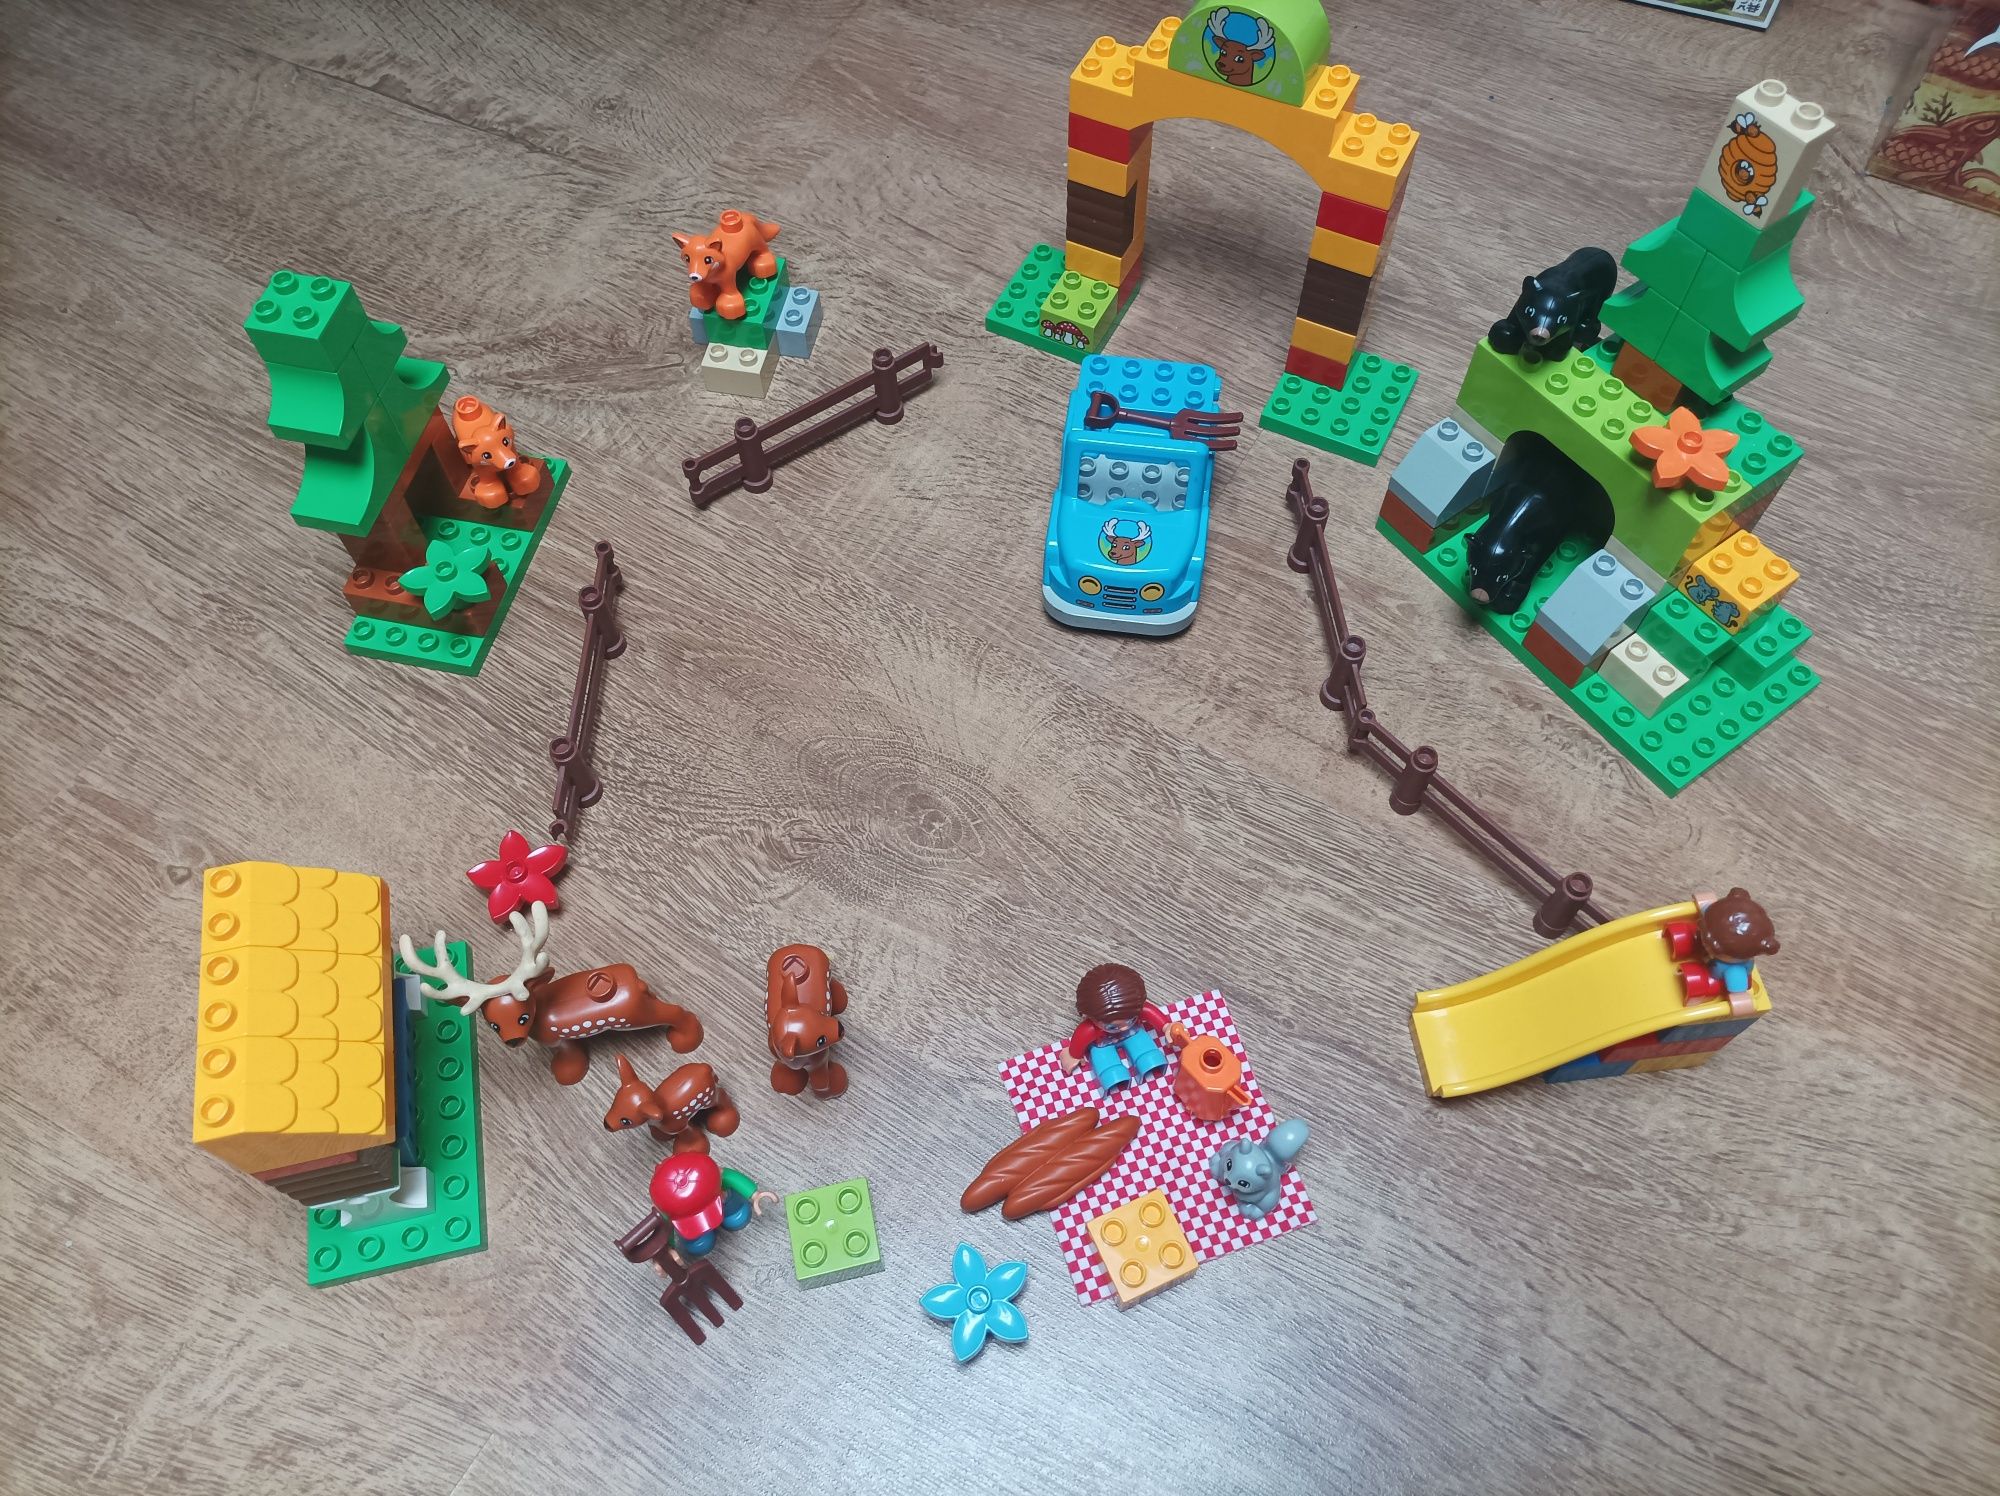 Klocki LEGO Duplo las kompletne - do negocjacji